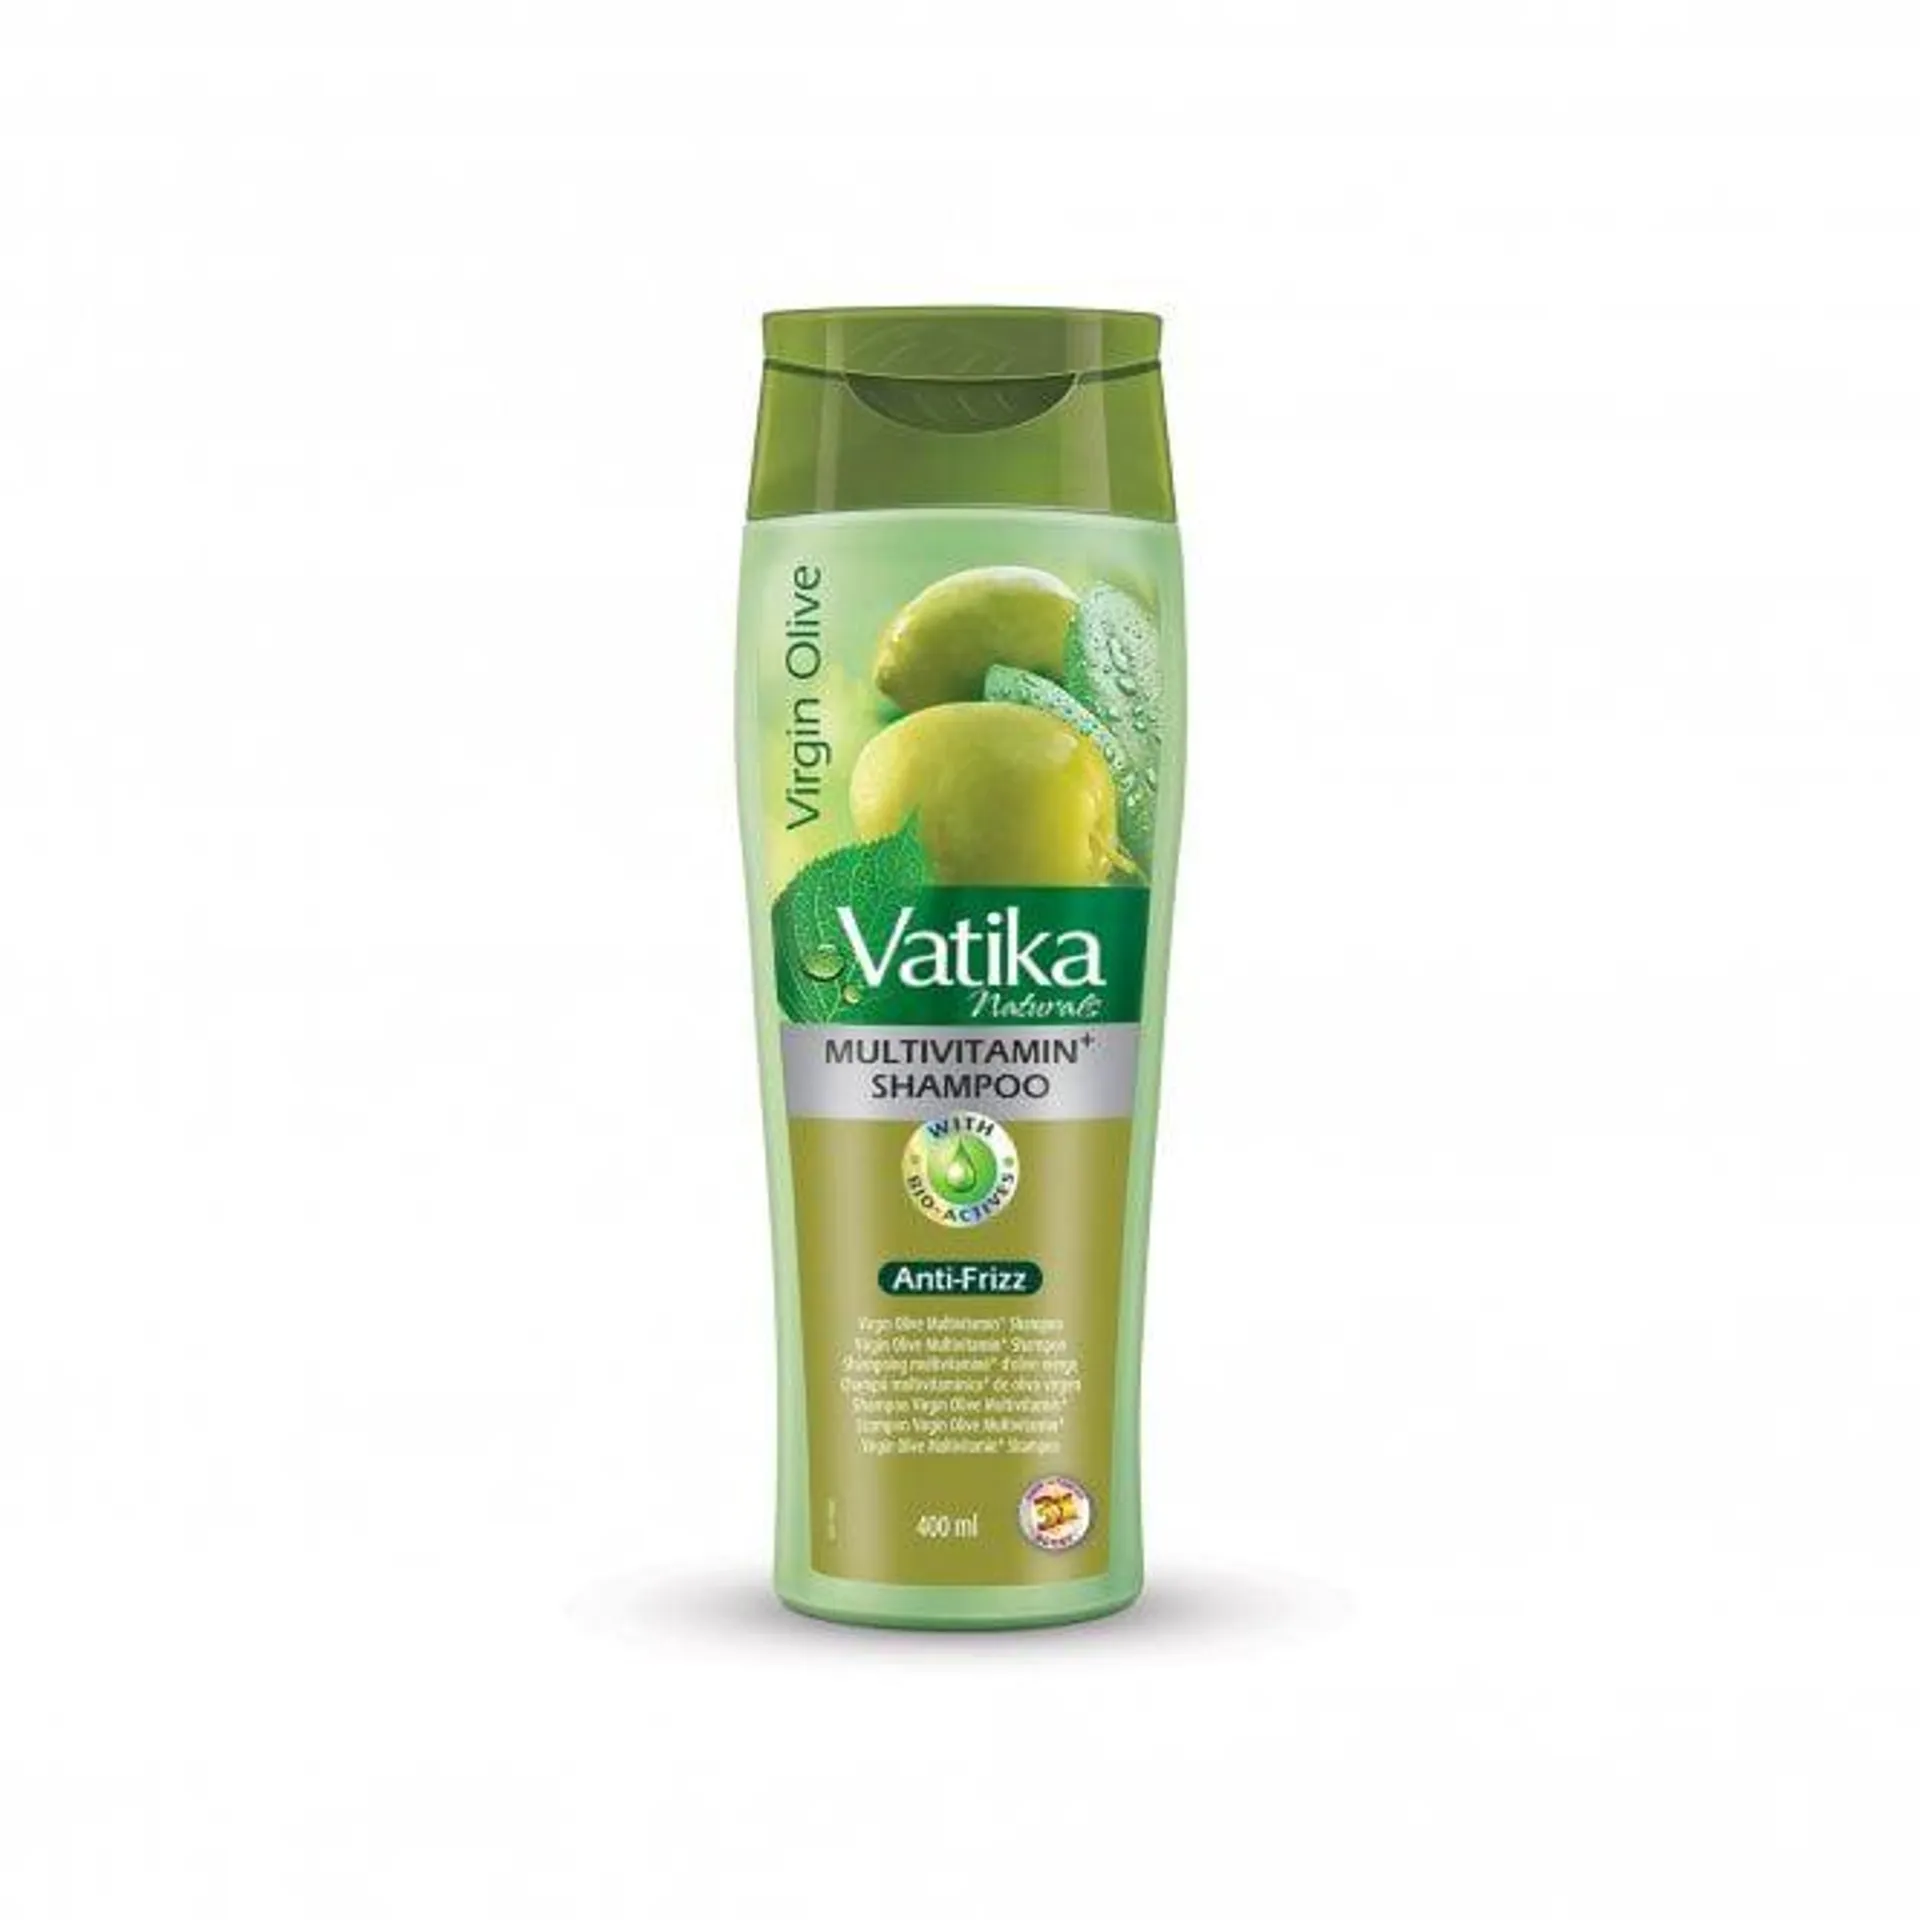 Virgin Olive Shampoo 400ml Bottle